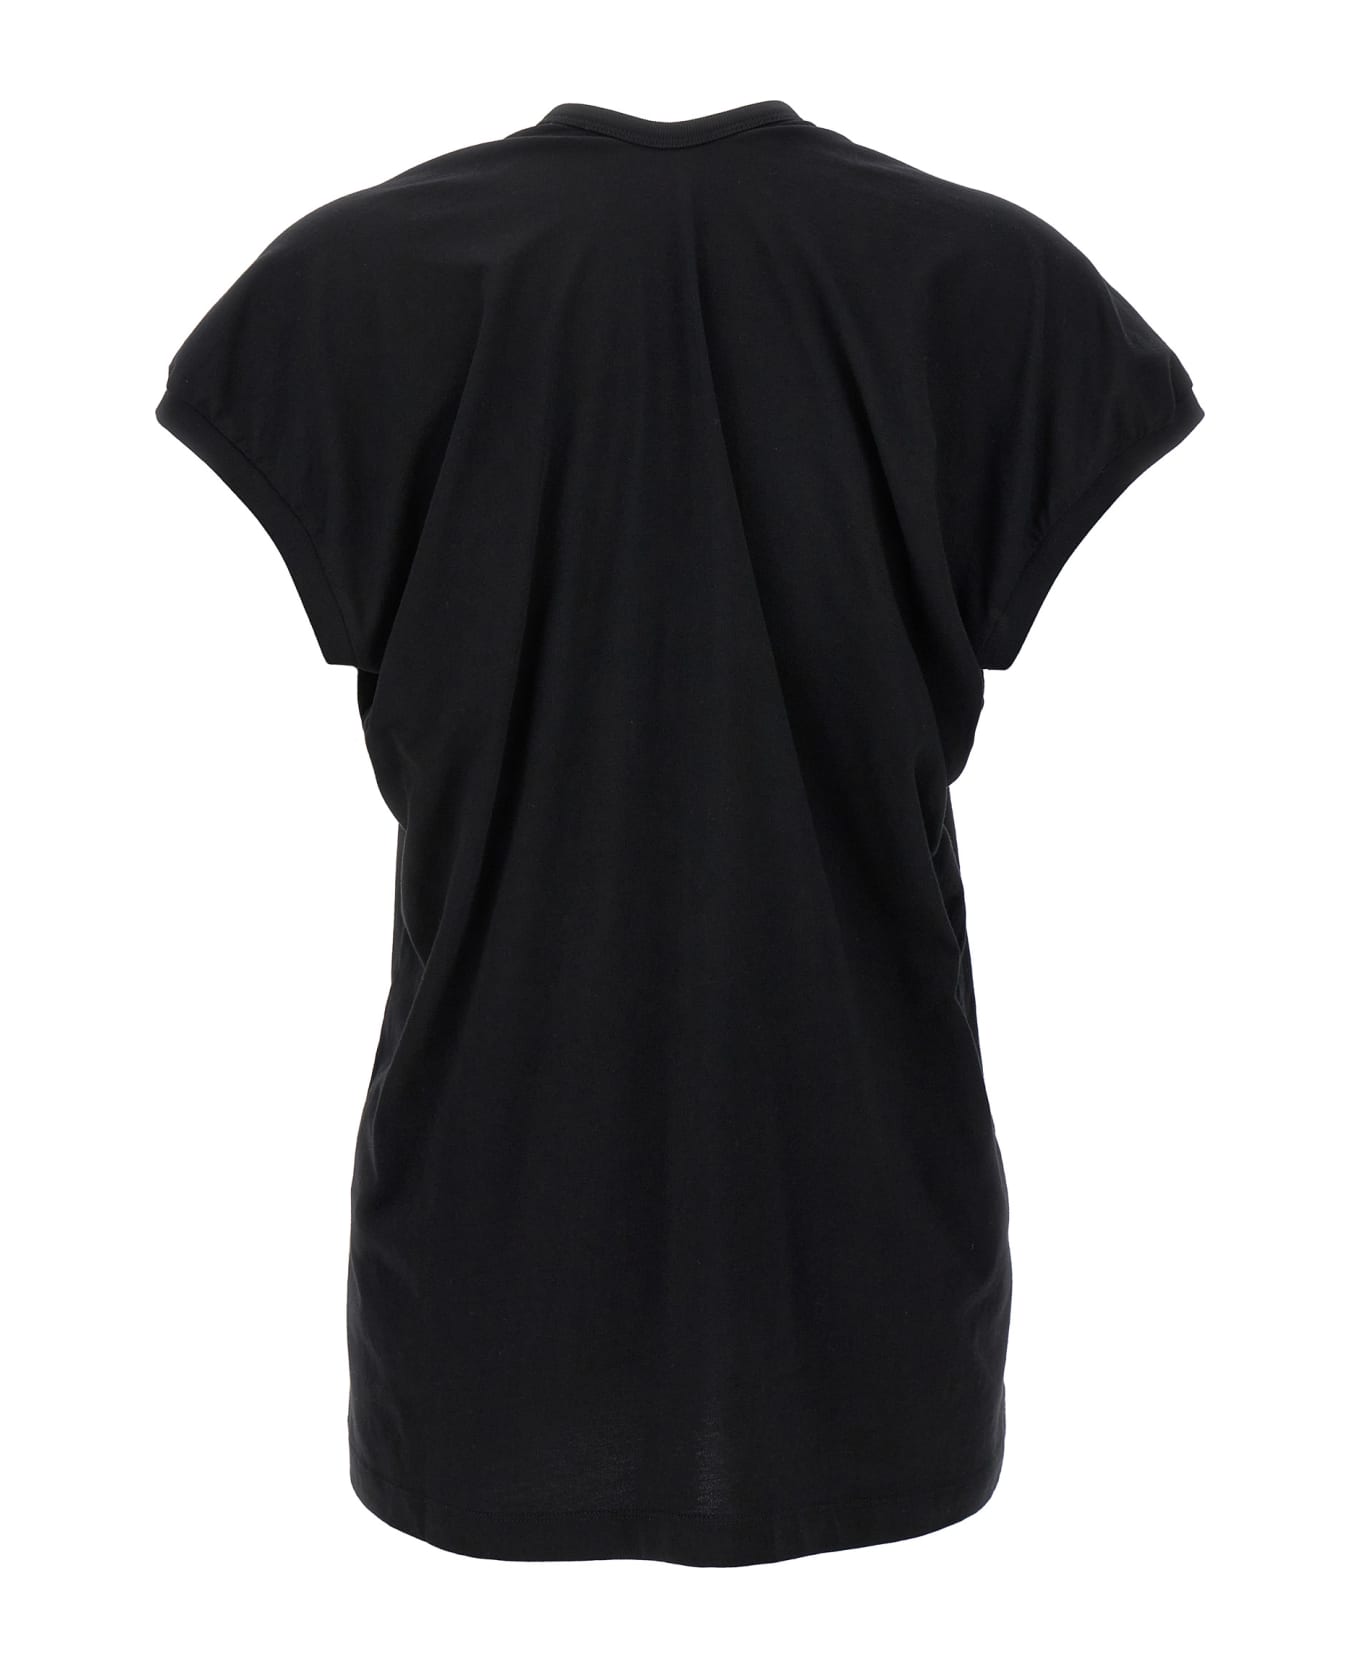 Dries Van Noten 'hena' T-shirt - Black   Tシャツ